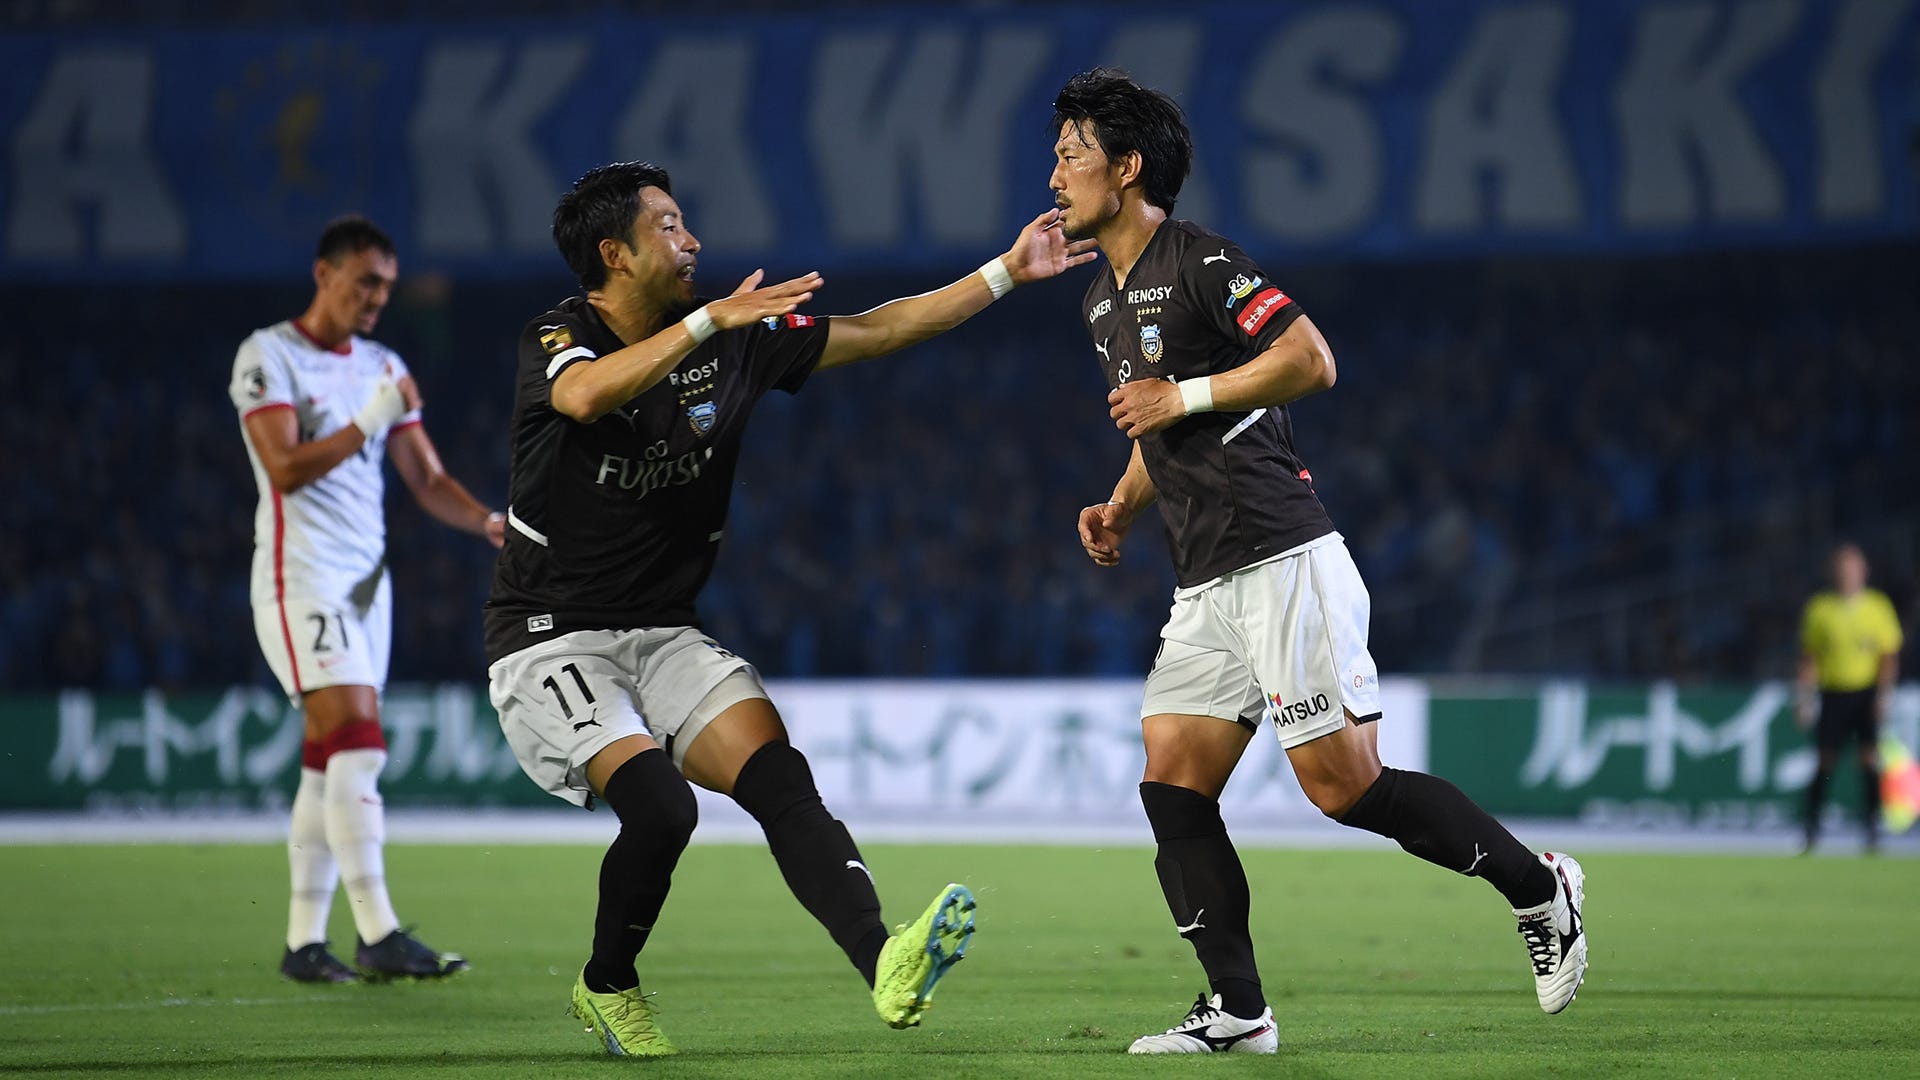 川崎フロンターレが逆転優勝へ大きな3連勝 鹿島アントラーズとの上位直接対決制す Jリーグ Goal Com 日本